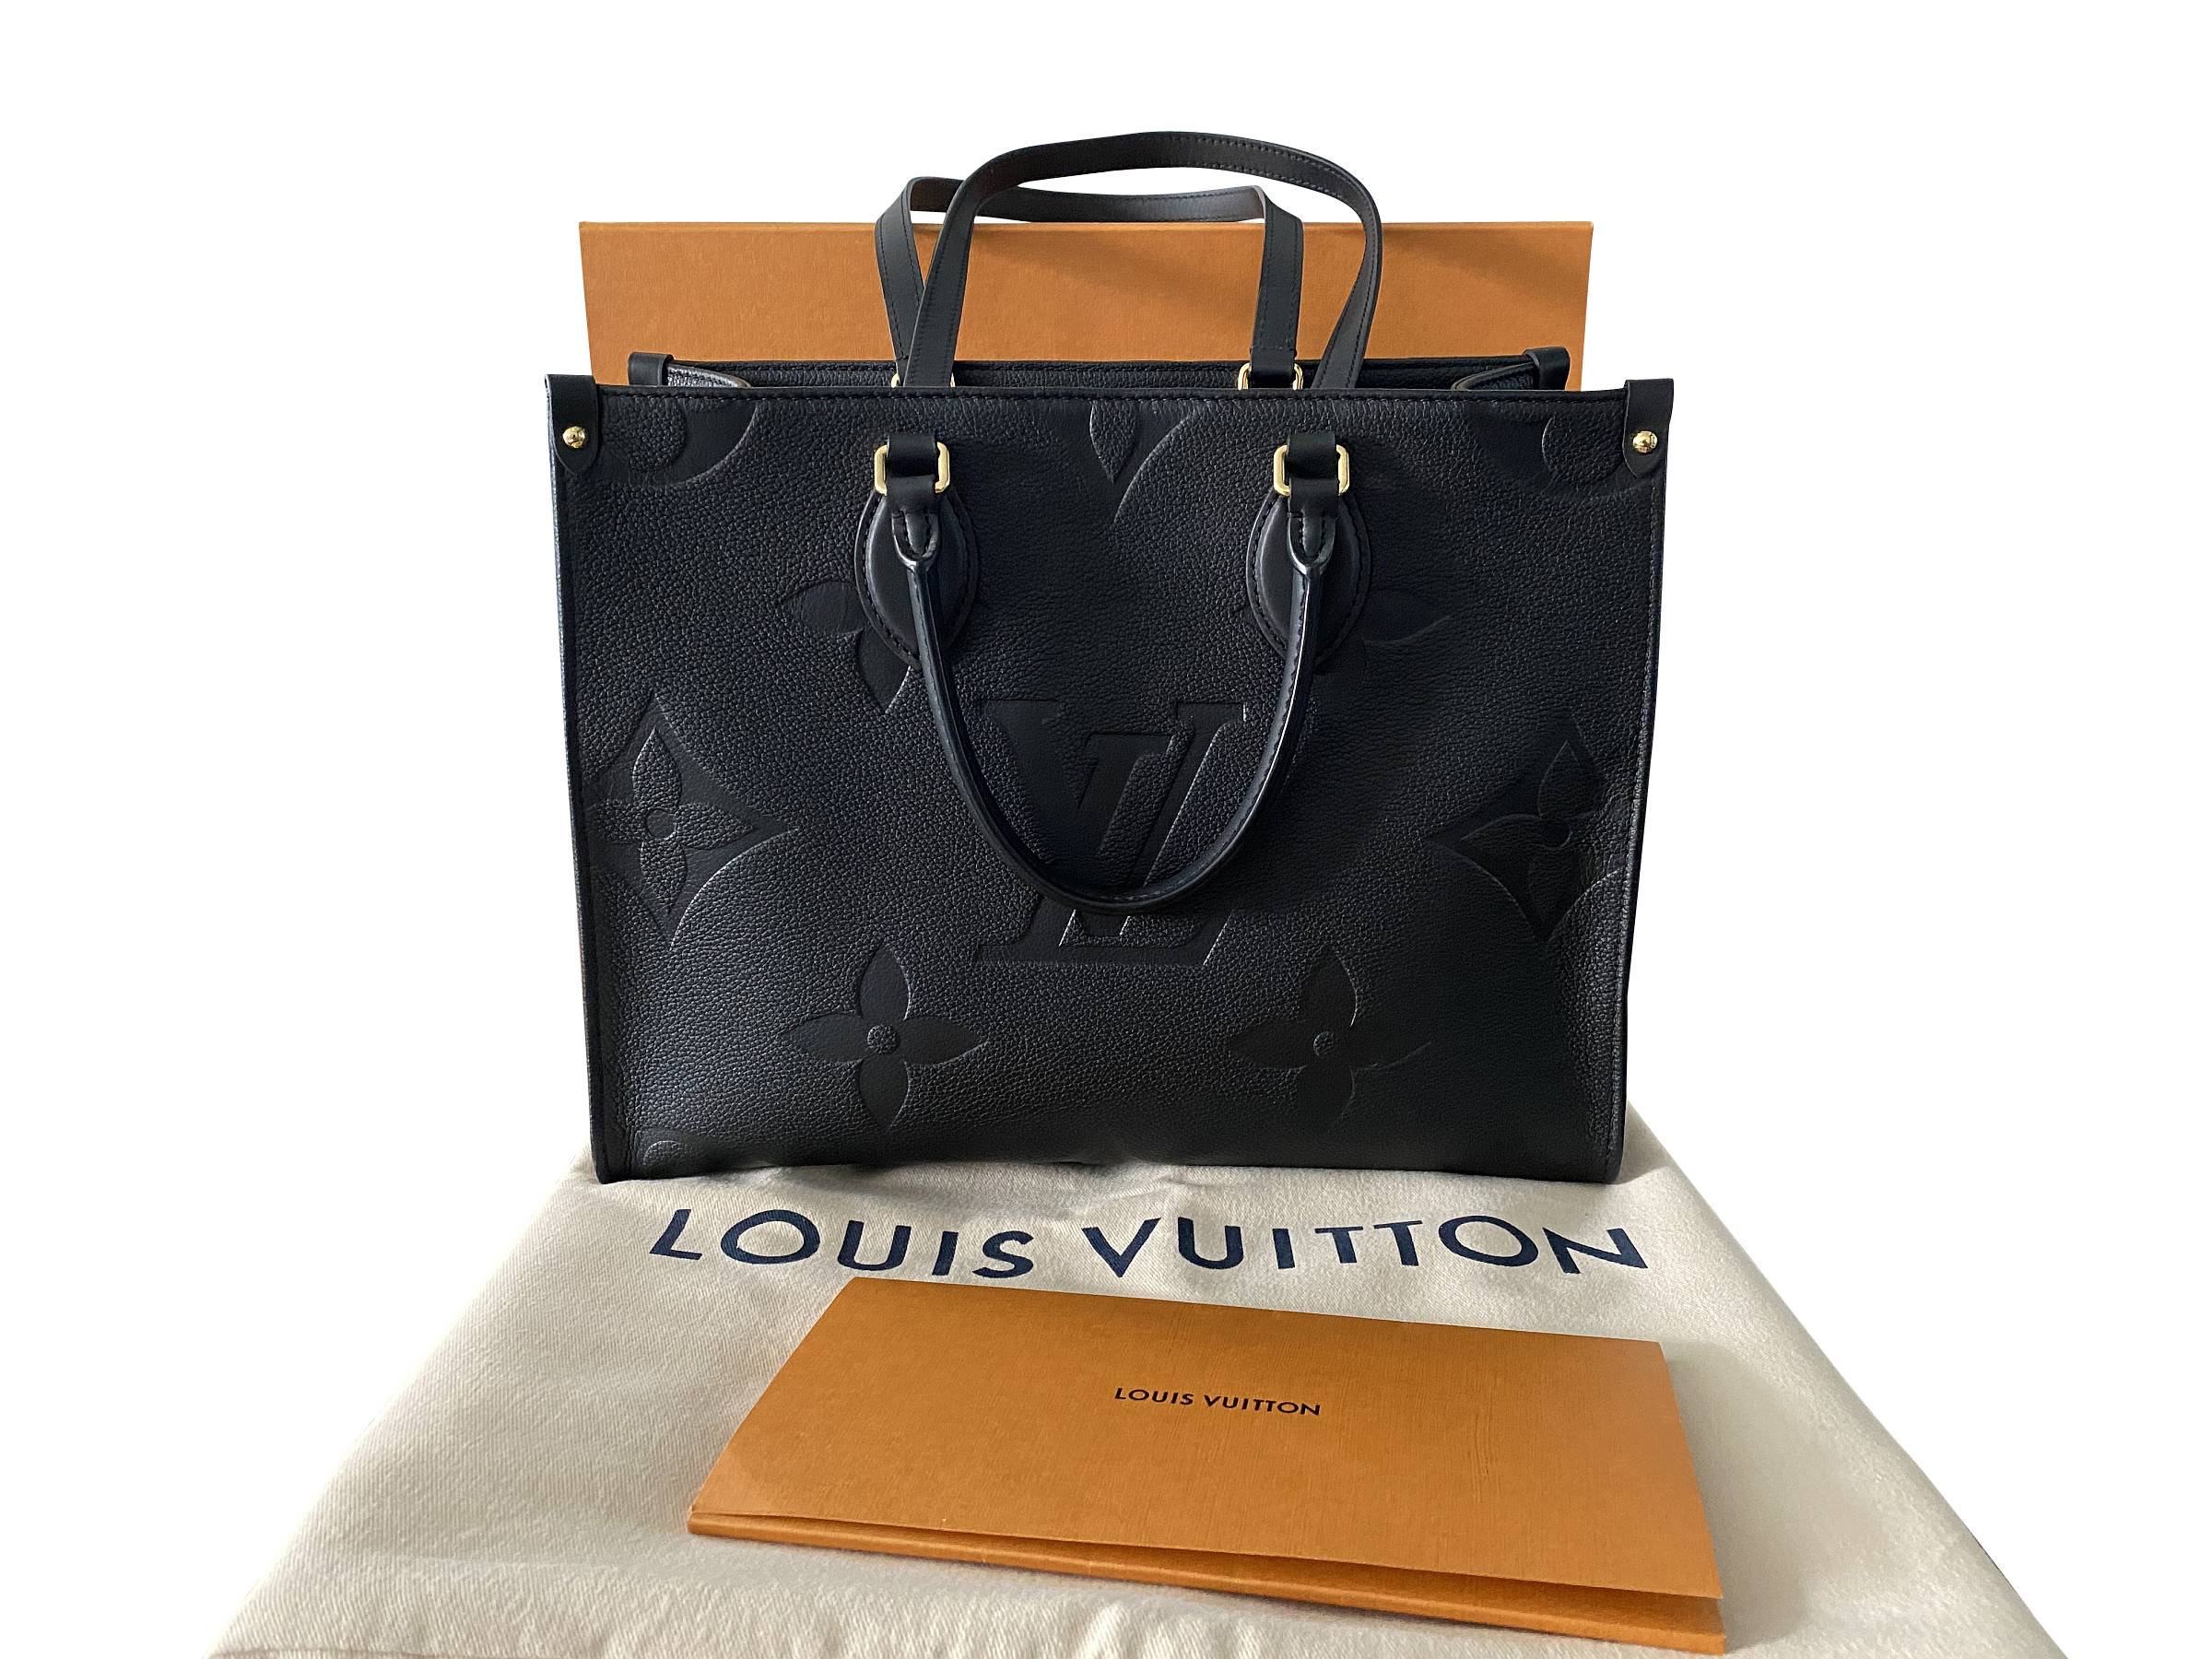 VERKAUFT - Louis Vuitton Onthego MM Giant Empreinte Leder M45595 * Tasche  Shopper schwarz * wie Neu von August 2021